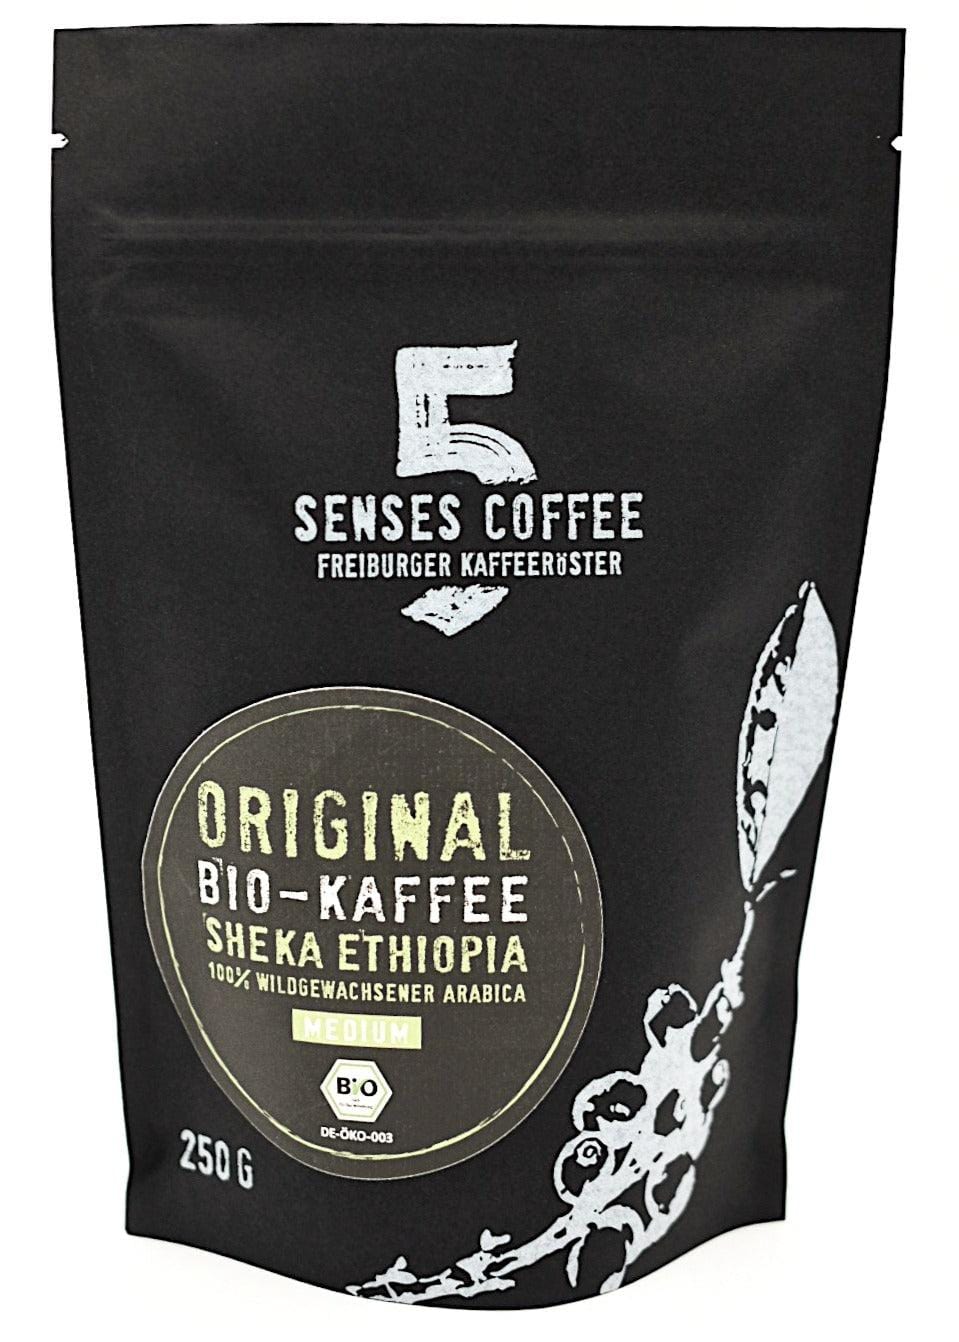 5 SENSES ORGANIC BIO-KAFFEE ÄTHIOPIEN 5 Senses Coffee